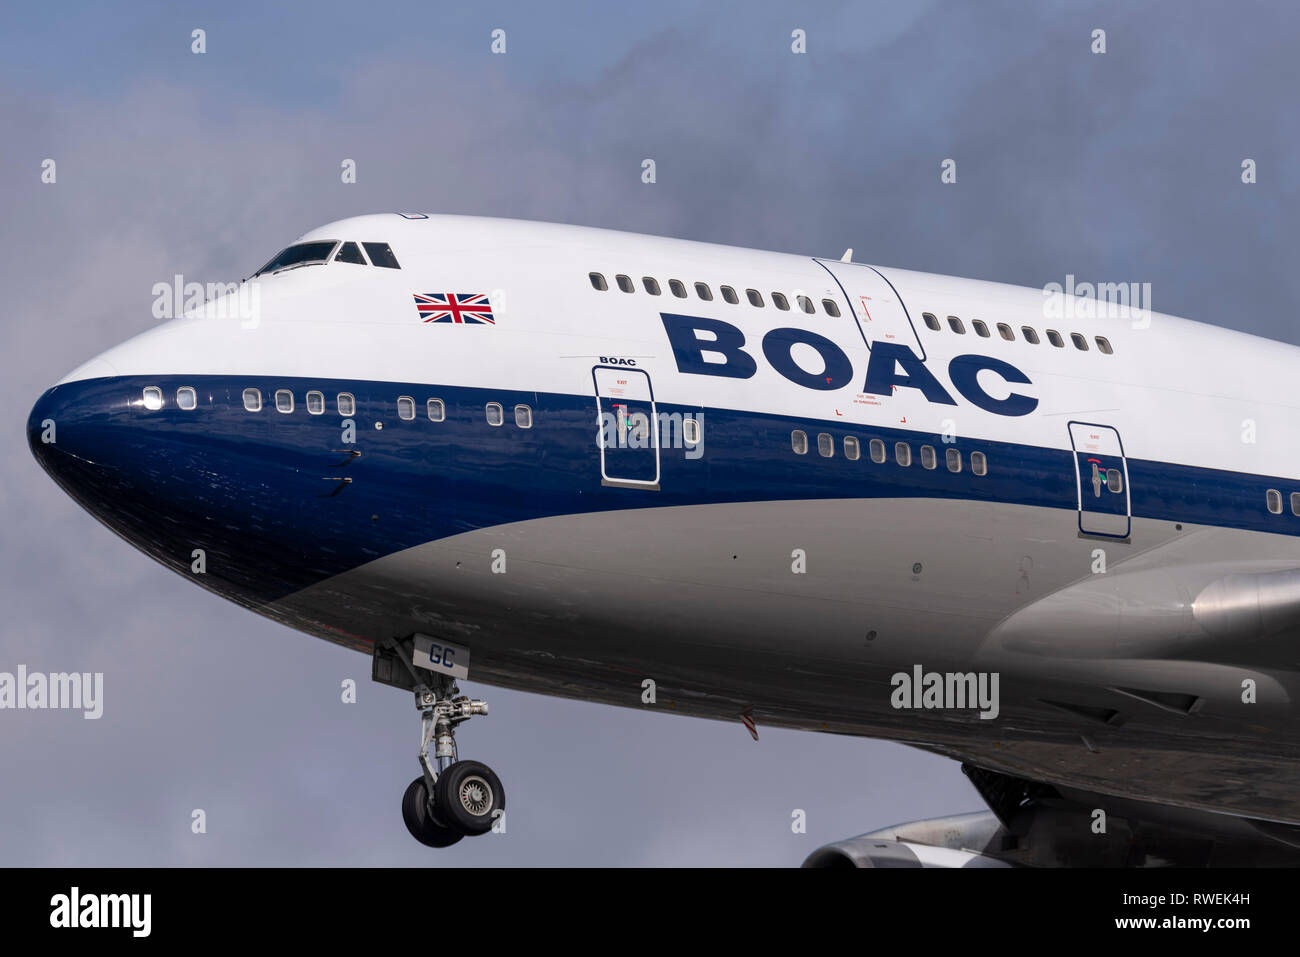 British Airways BOAC 100-jähriges Lackierschema Boeing 747 Jumbo Jet Jet Flugzeug Landung auf London Heathrow Airport, Großbritannien Stockfoto